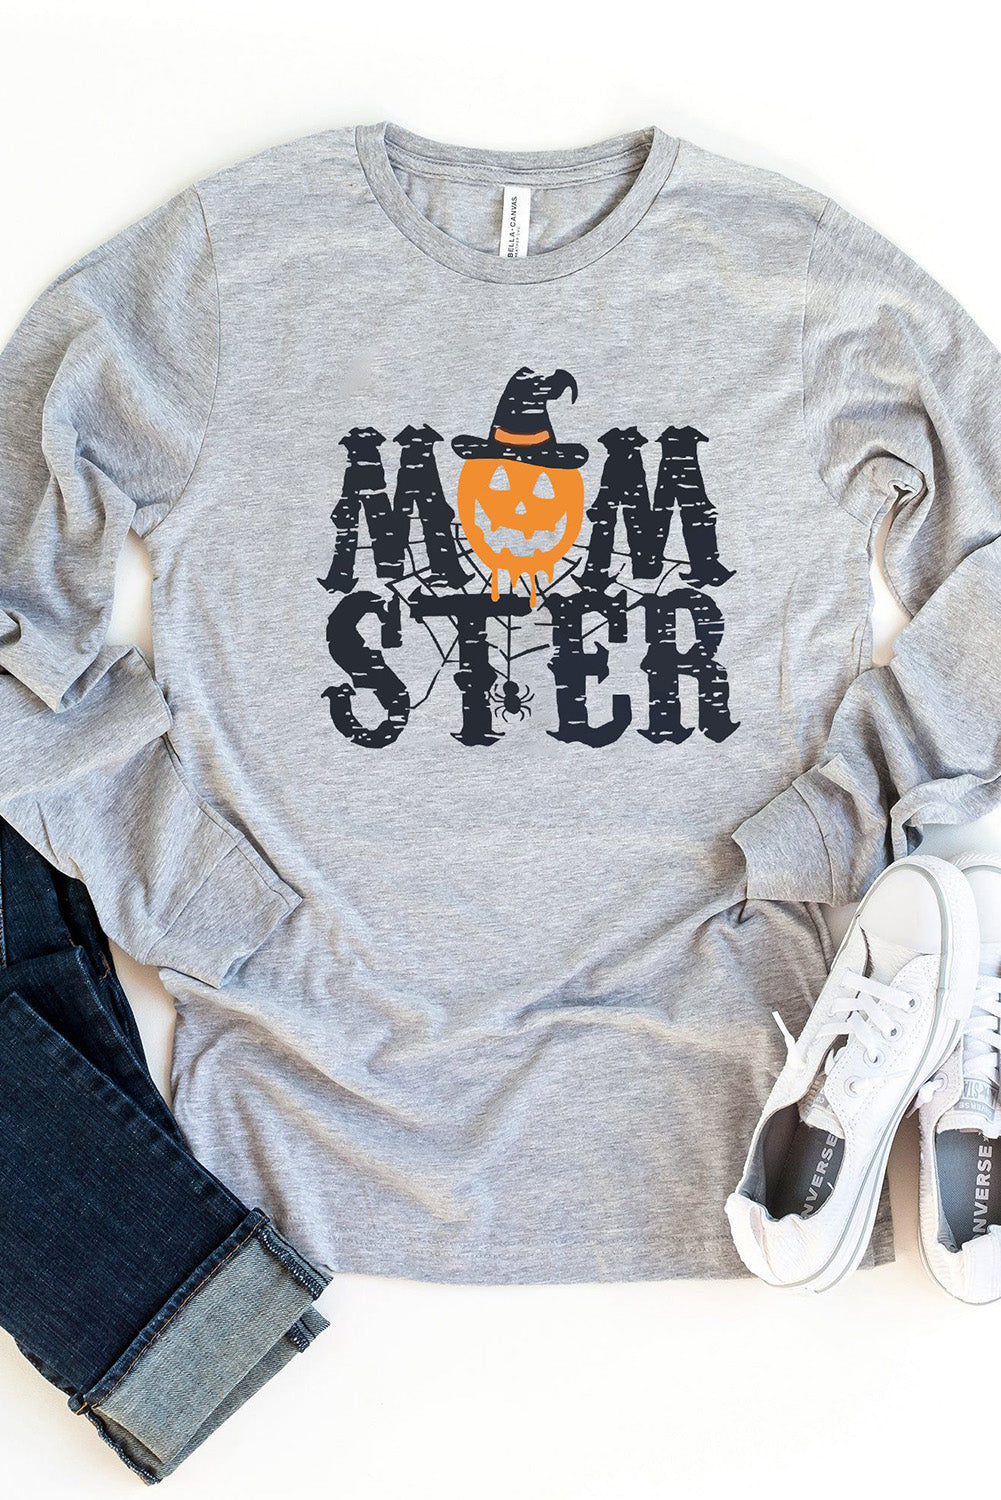 MOM STER Halloween Pumpkin Graphic Crew Neck Top